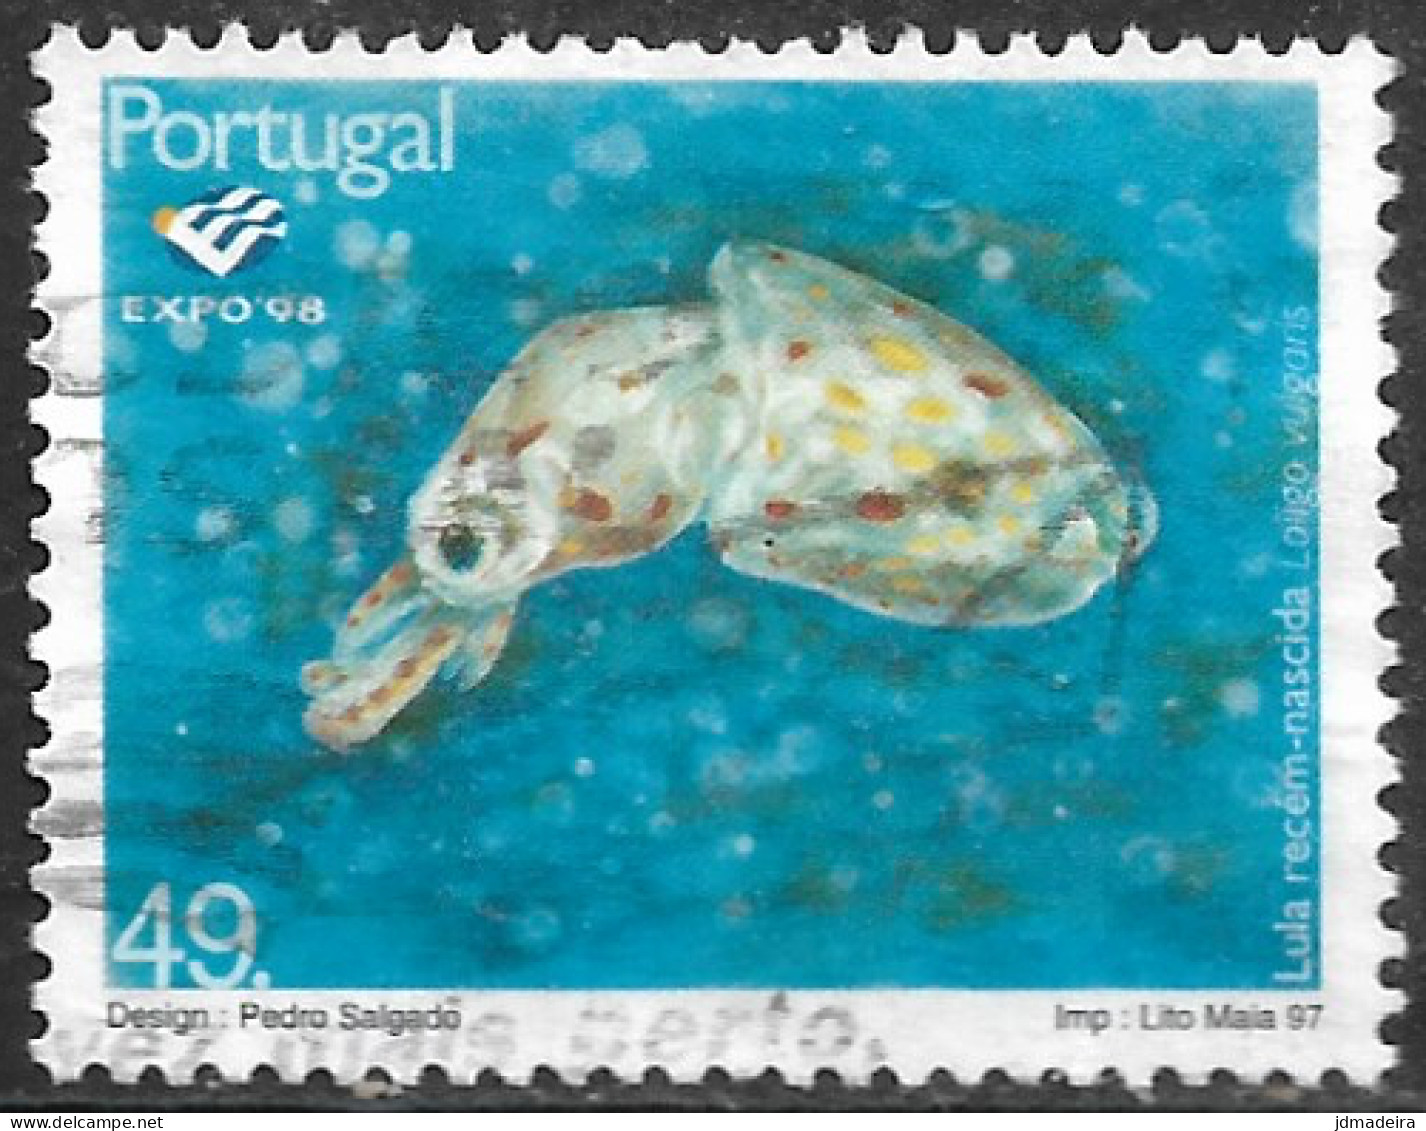 Portugal – 1997 Expo'98 40. Used Stamp - Gebruikt